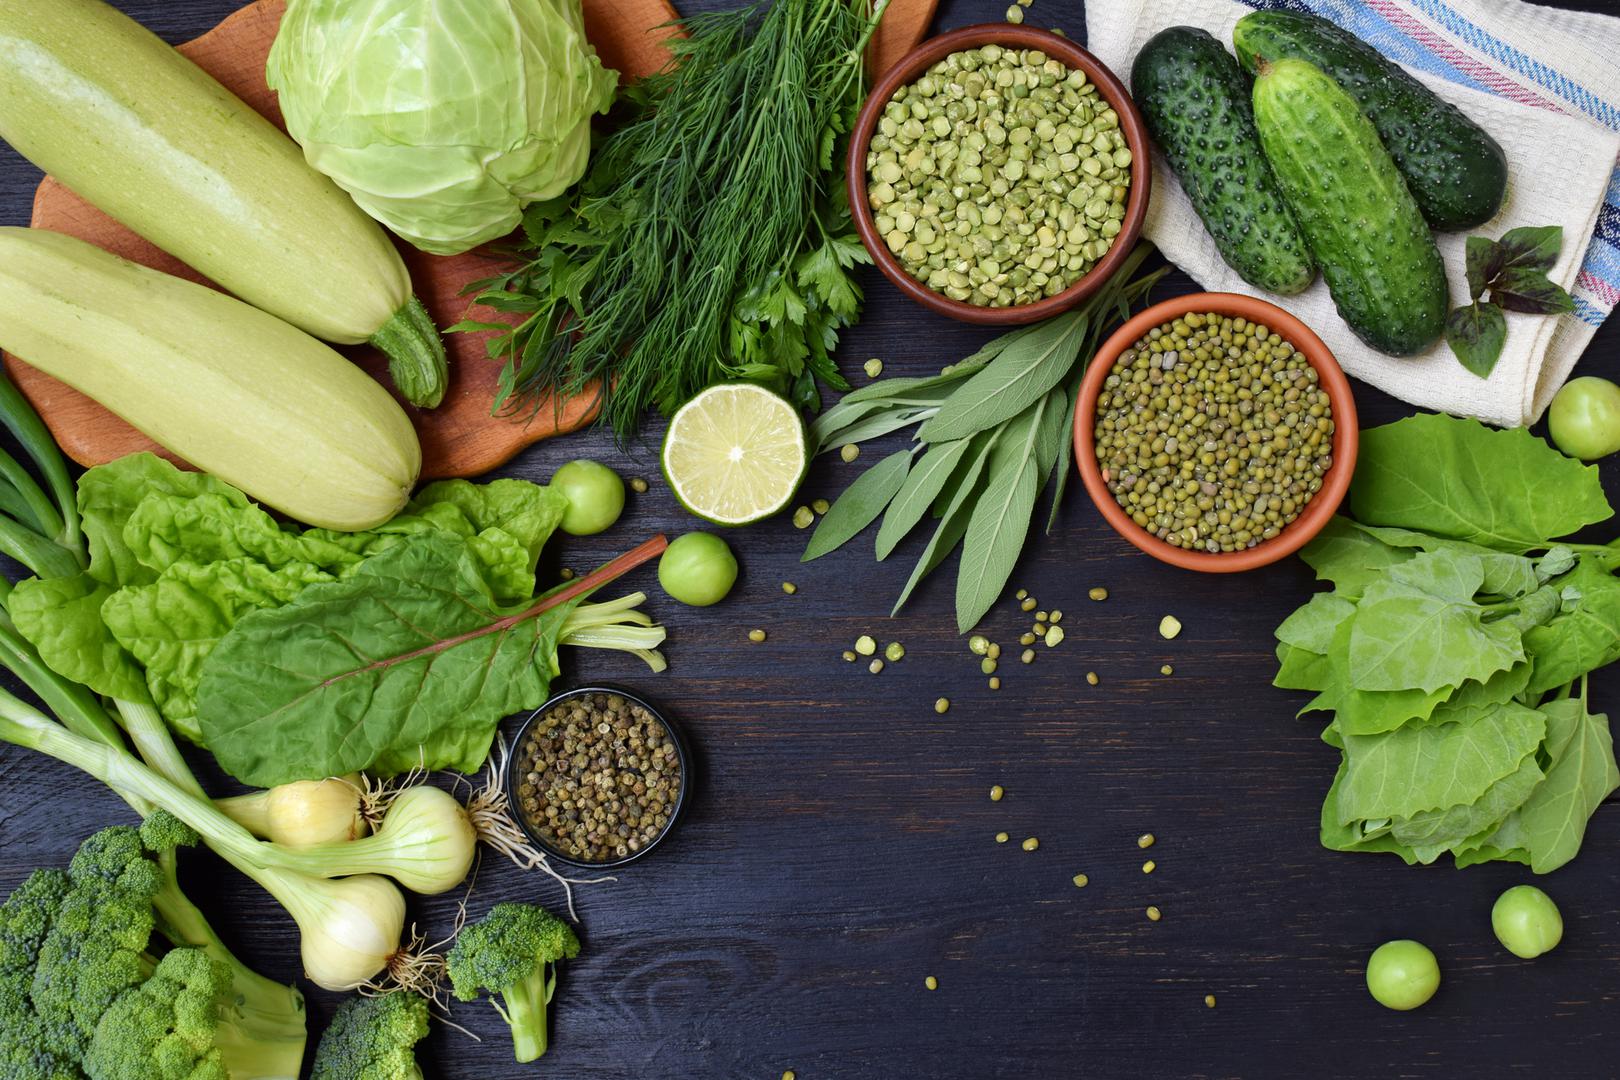 Lisnato povrće - Zelena salata, špinat, kelj i gorušica bogati su vitaminima A, C, E i K te sadrže antioksidanse koji pomažu osloboditi toksine iz tijela. Oni obiluju kalcijem, magnezijem i kalijem što igra veliku ulogu u regulaciji krvnog tlaka.